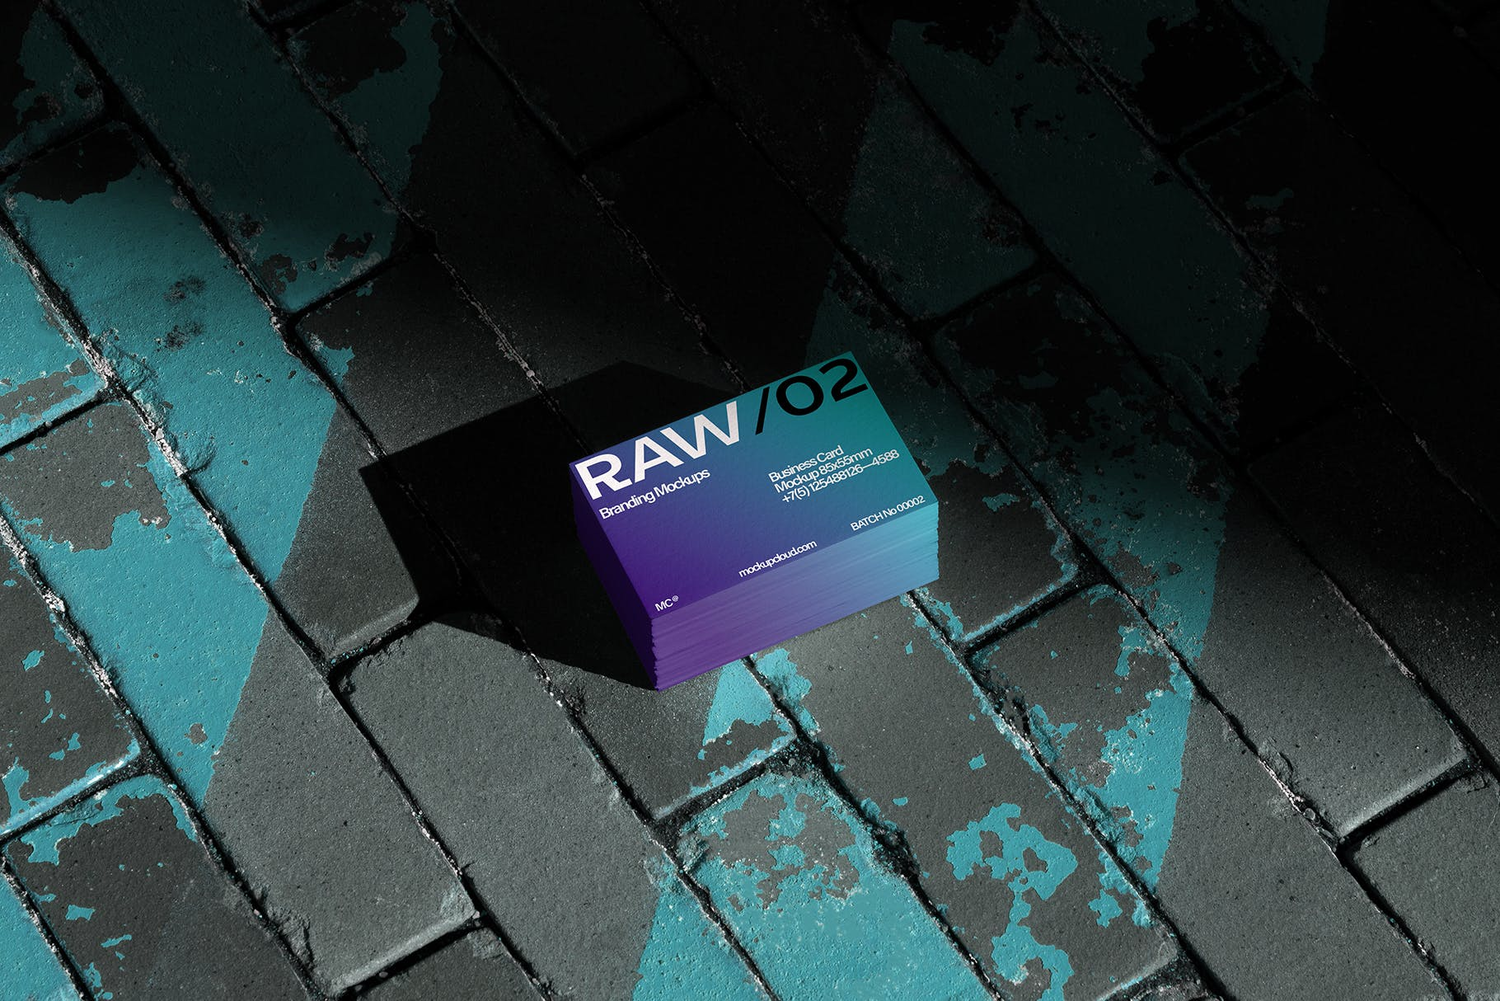 4746 16款质感光影工业风名片设计作品贴图ps样机素材场景展示效果模板 Raw Business Cards Mockups Vol 2@GOOODME.COM